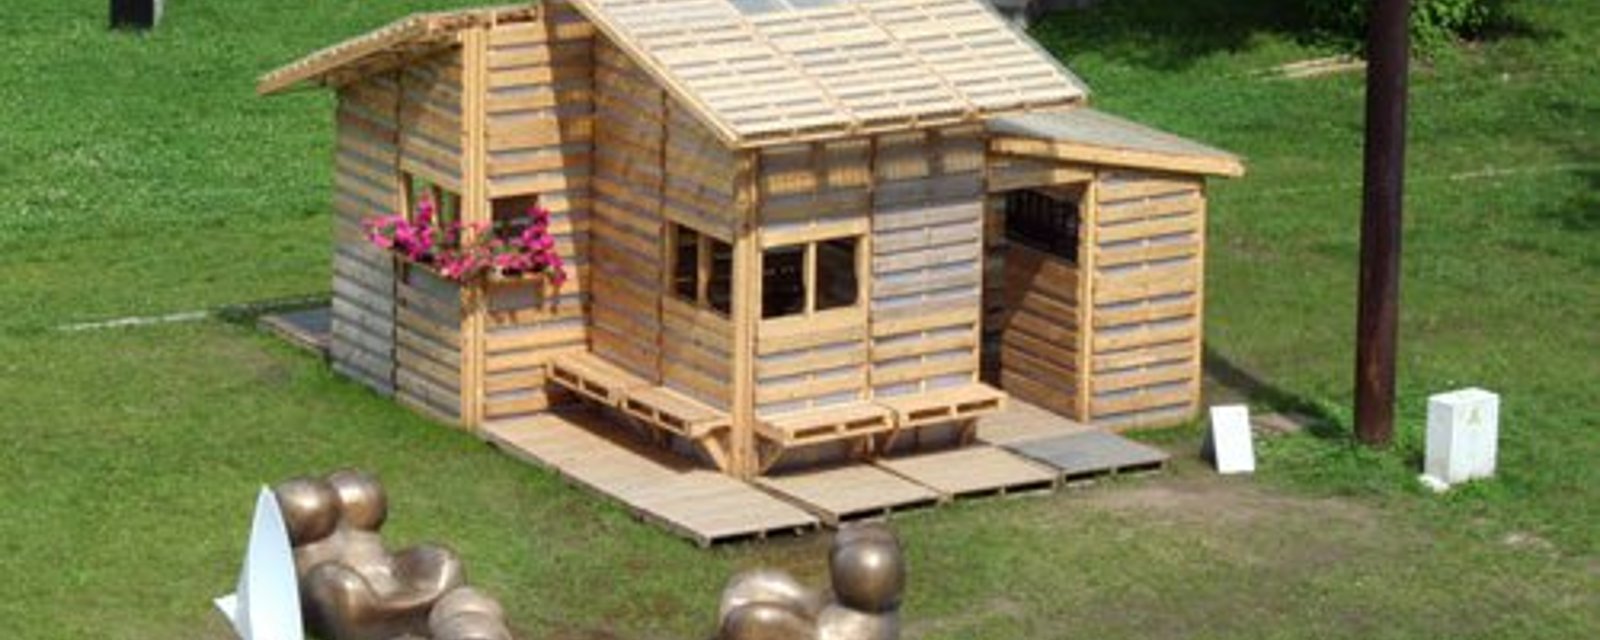 Construisez une jolie cabane en palettes de bois pour seulement 500 $!